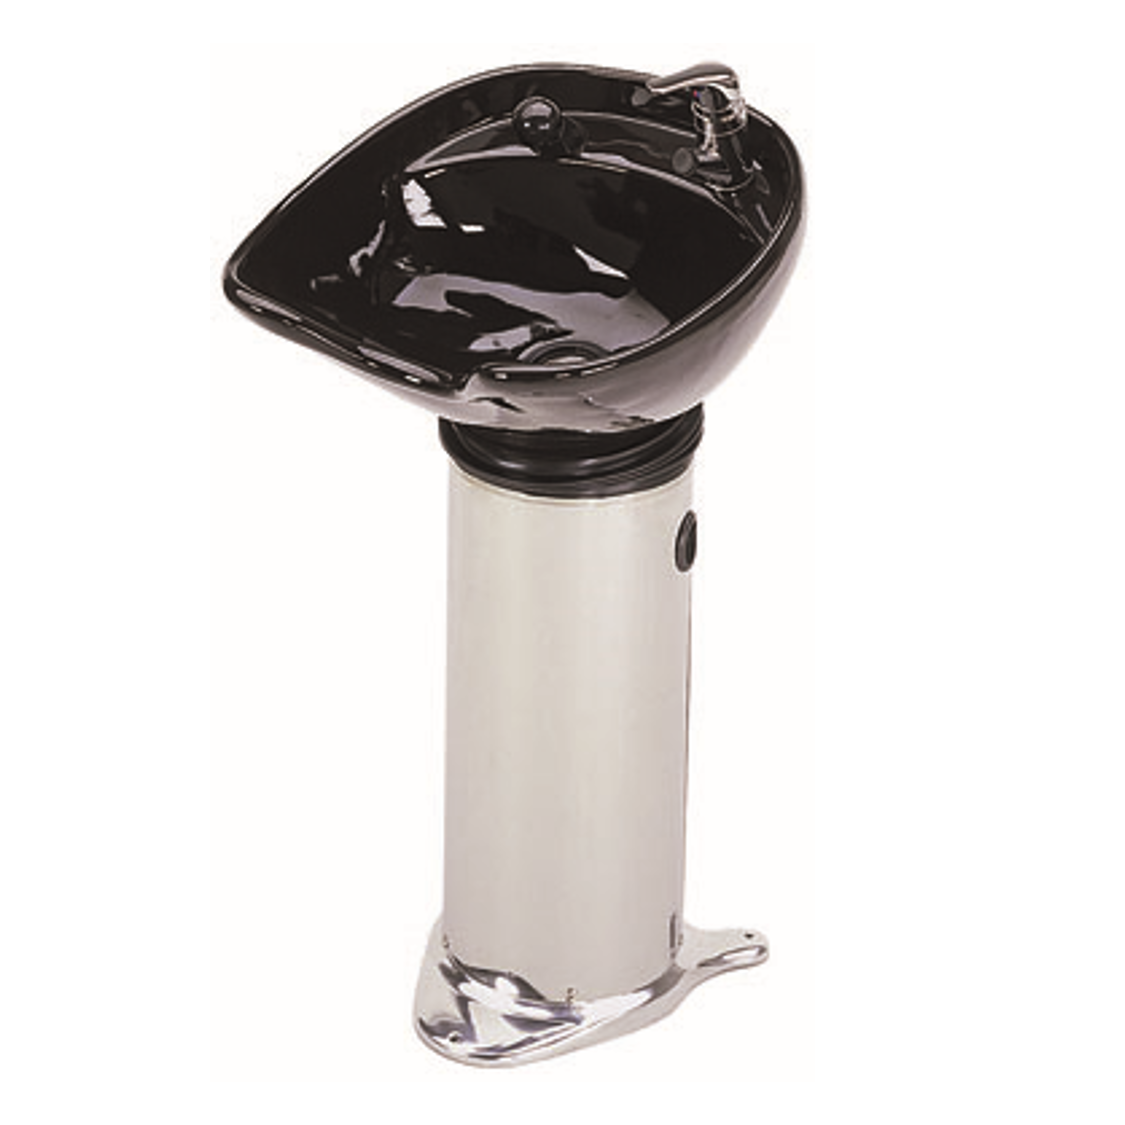 20B Pedestal Shampoo Backwash Sidewash System, Black Bowl